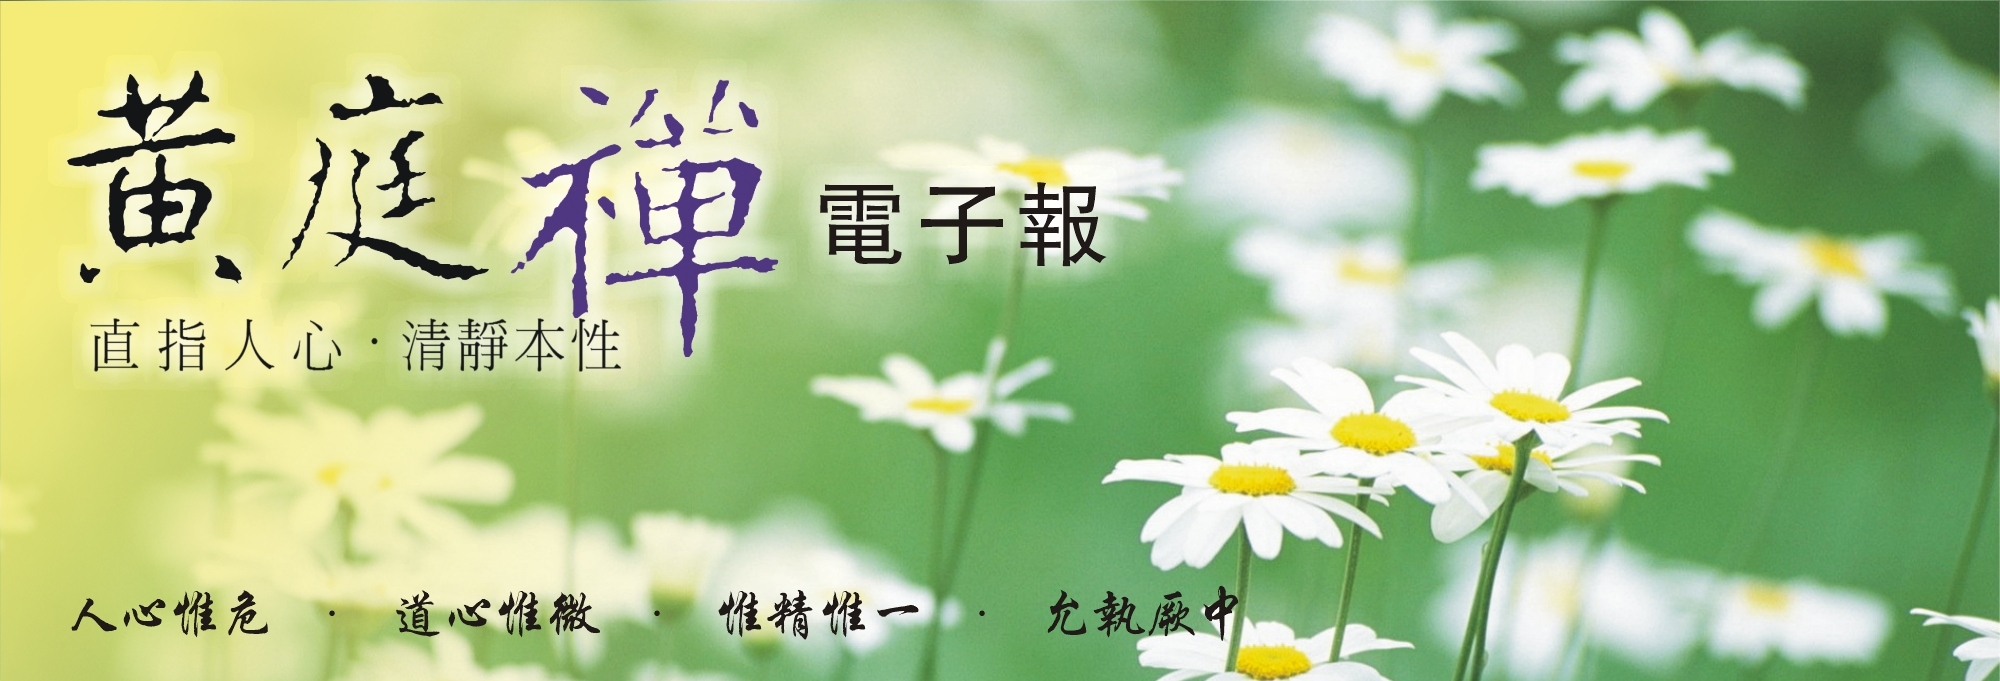 中華黃庭禪學會2014.05.11電子報